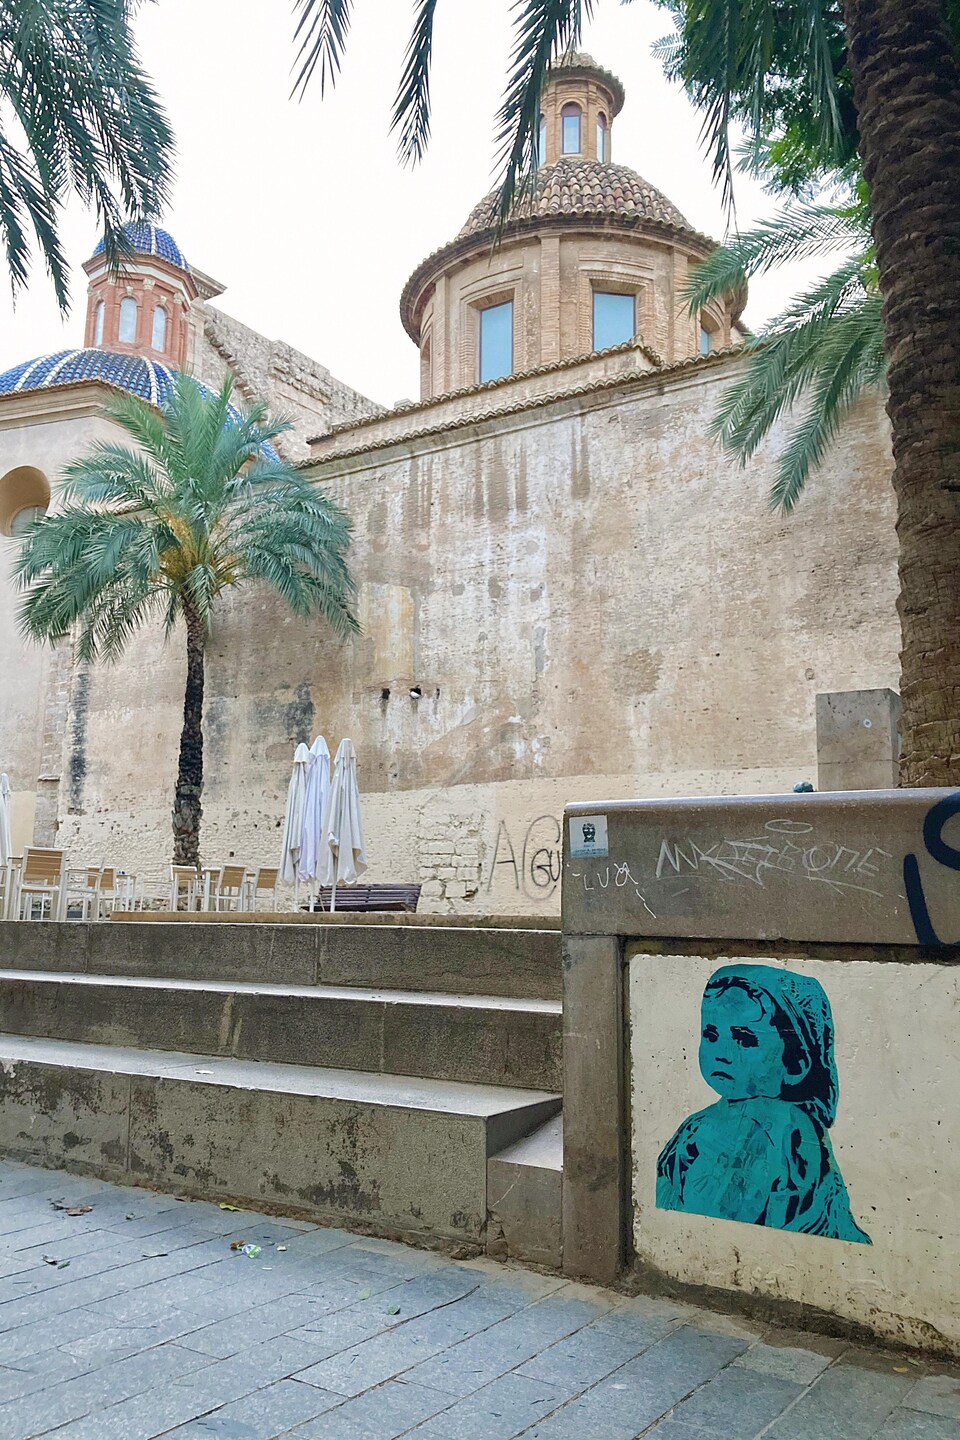 Une œuvre qui représente un enfant est collée sur un mur près d'un édifice à Valence.